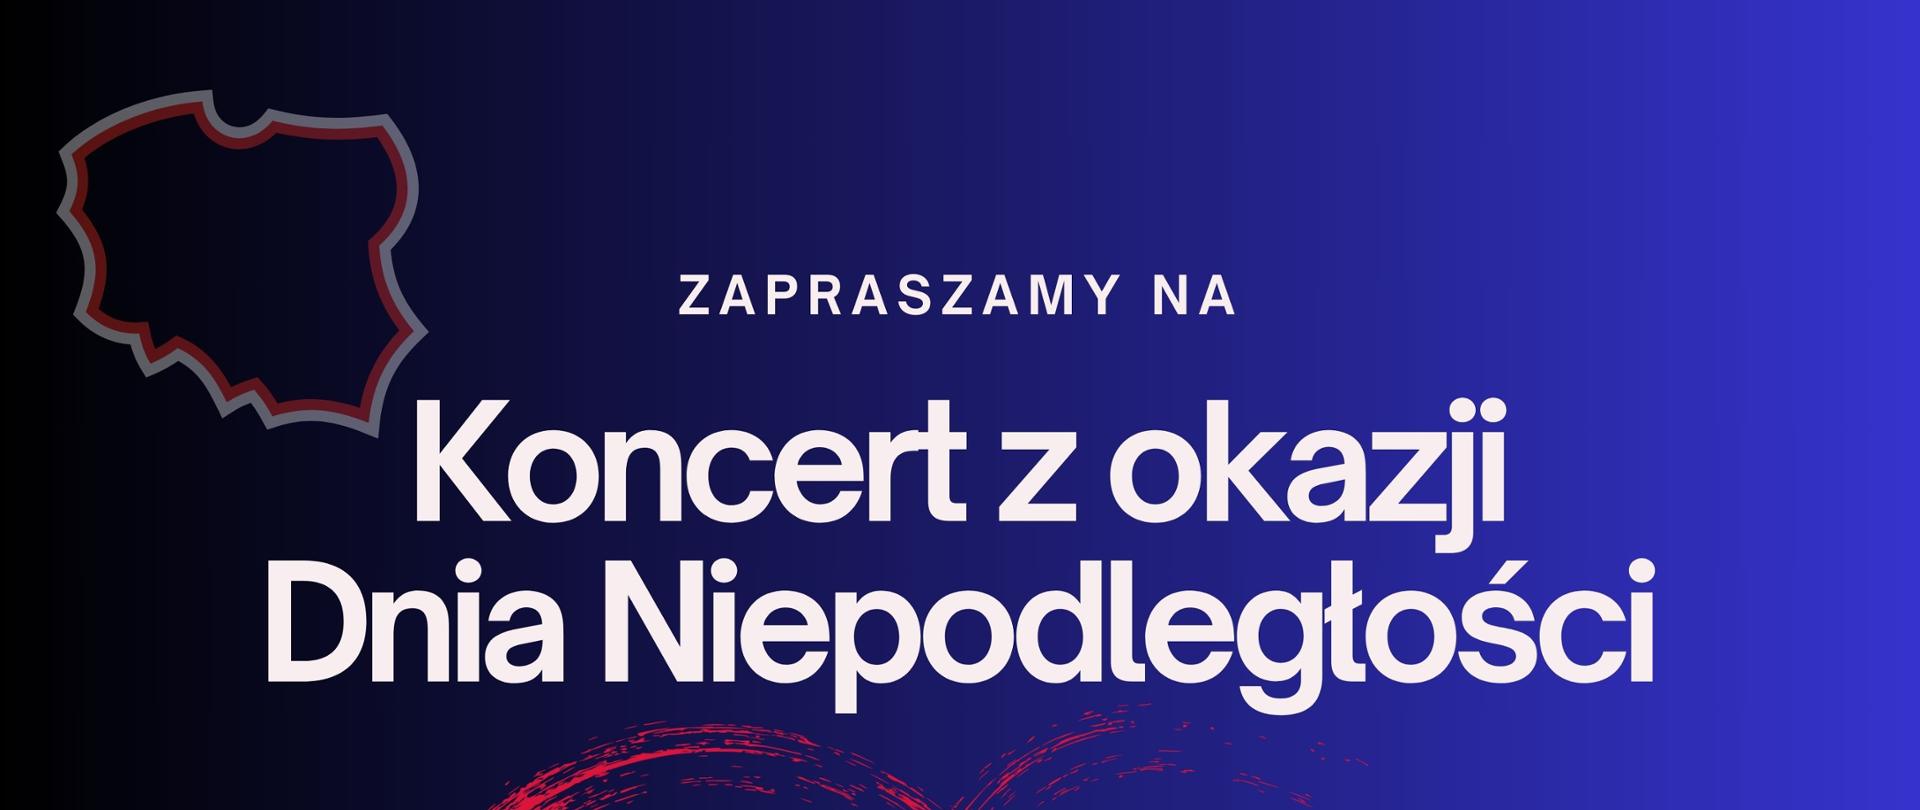 Plakat na niebieskim tle z białoczerwonym sercem z okazji Dnia Niepodległości i informacją tekstową o koncercie